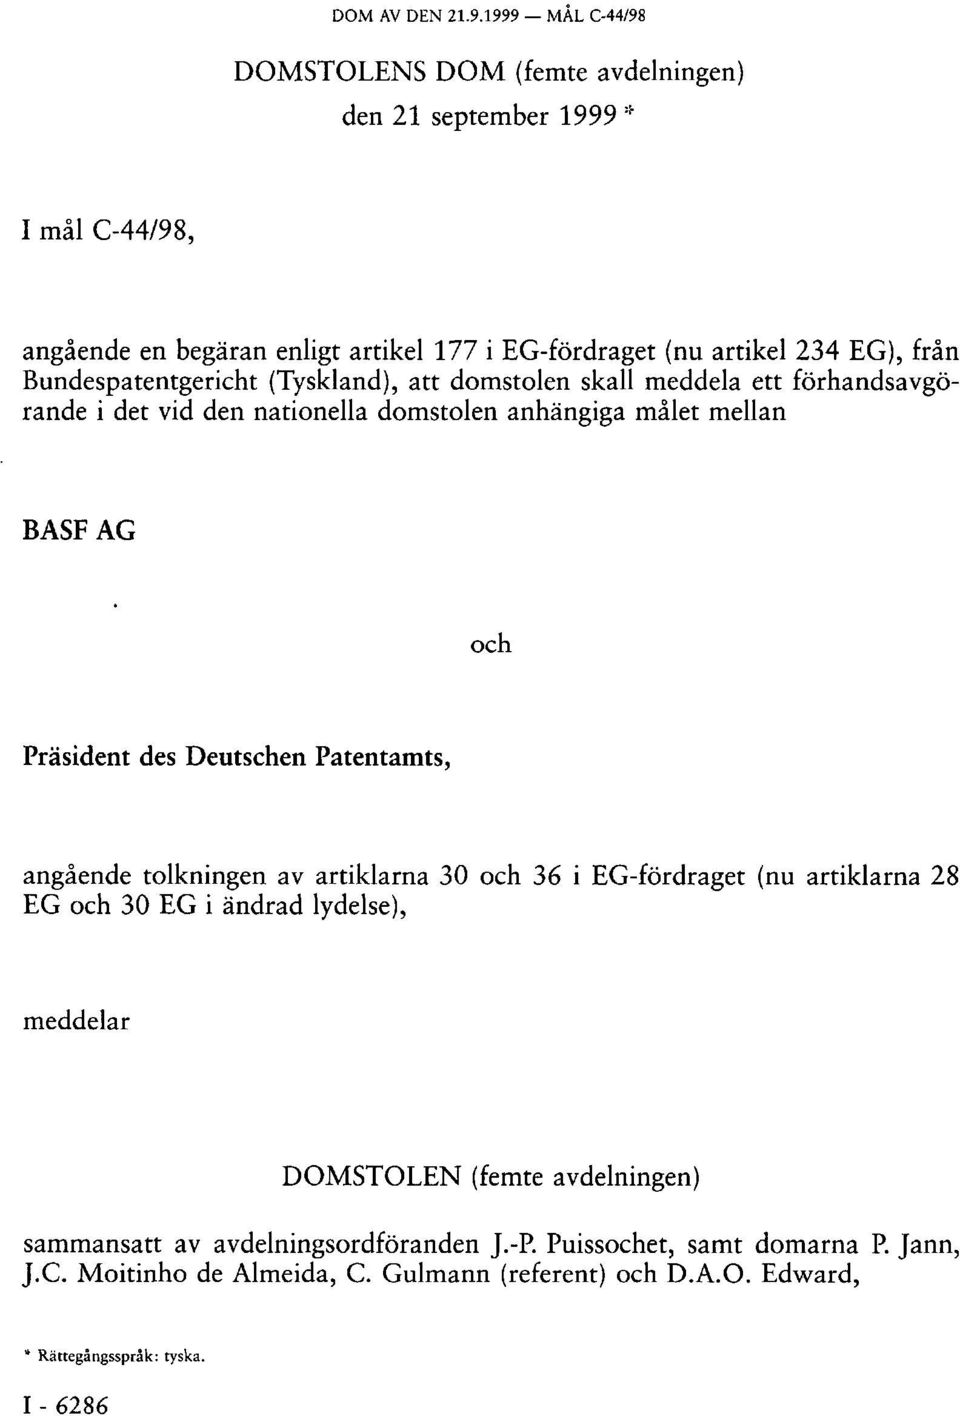 Bundespatentgericht (Tyskland), att domstolen skall meddela ett förhandsavgörande i det vid den nationella domstolen anhängiga målet mellan BASF AG och Präsident des